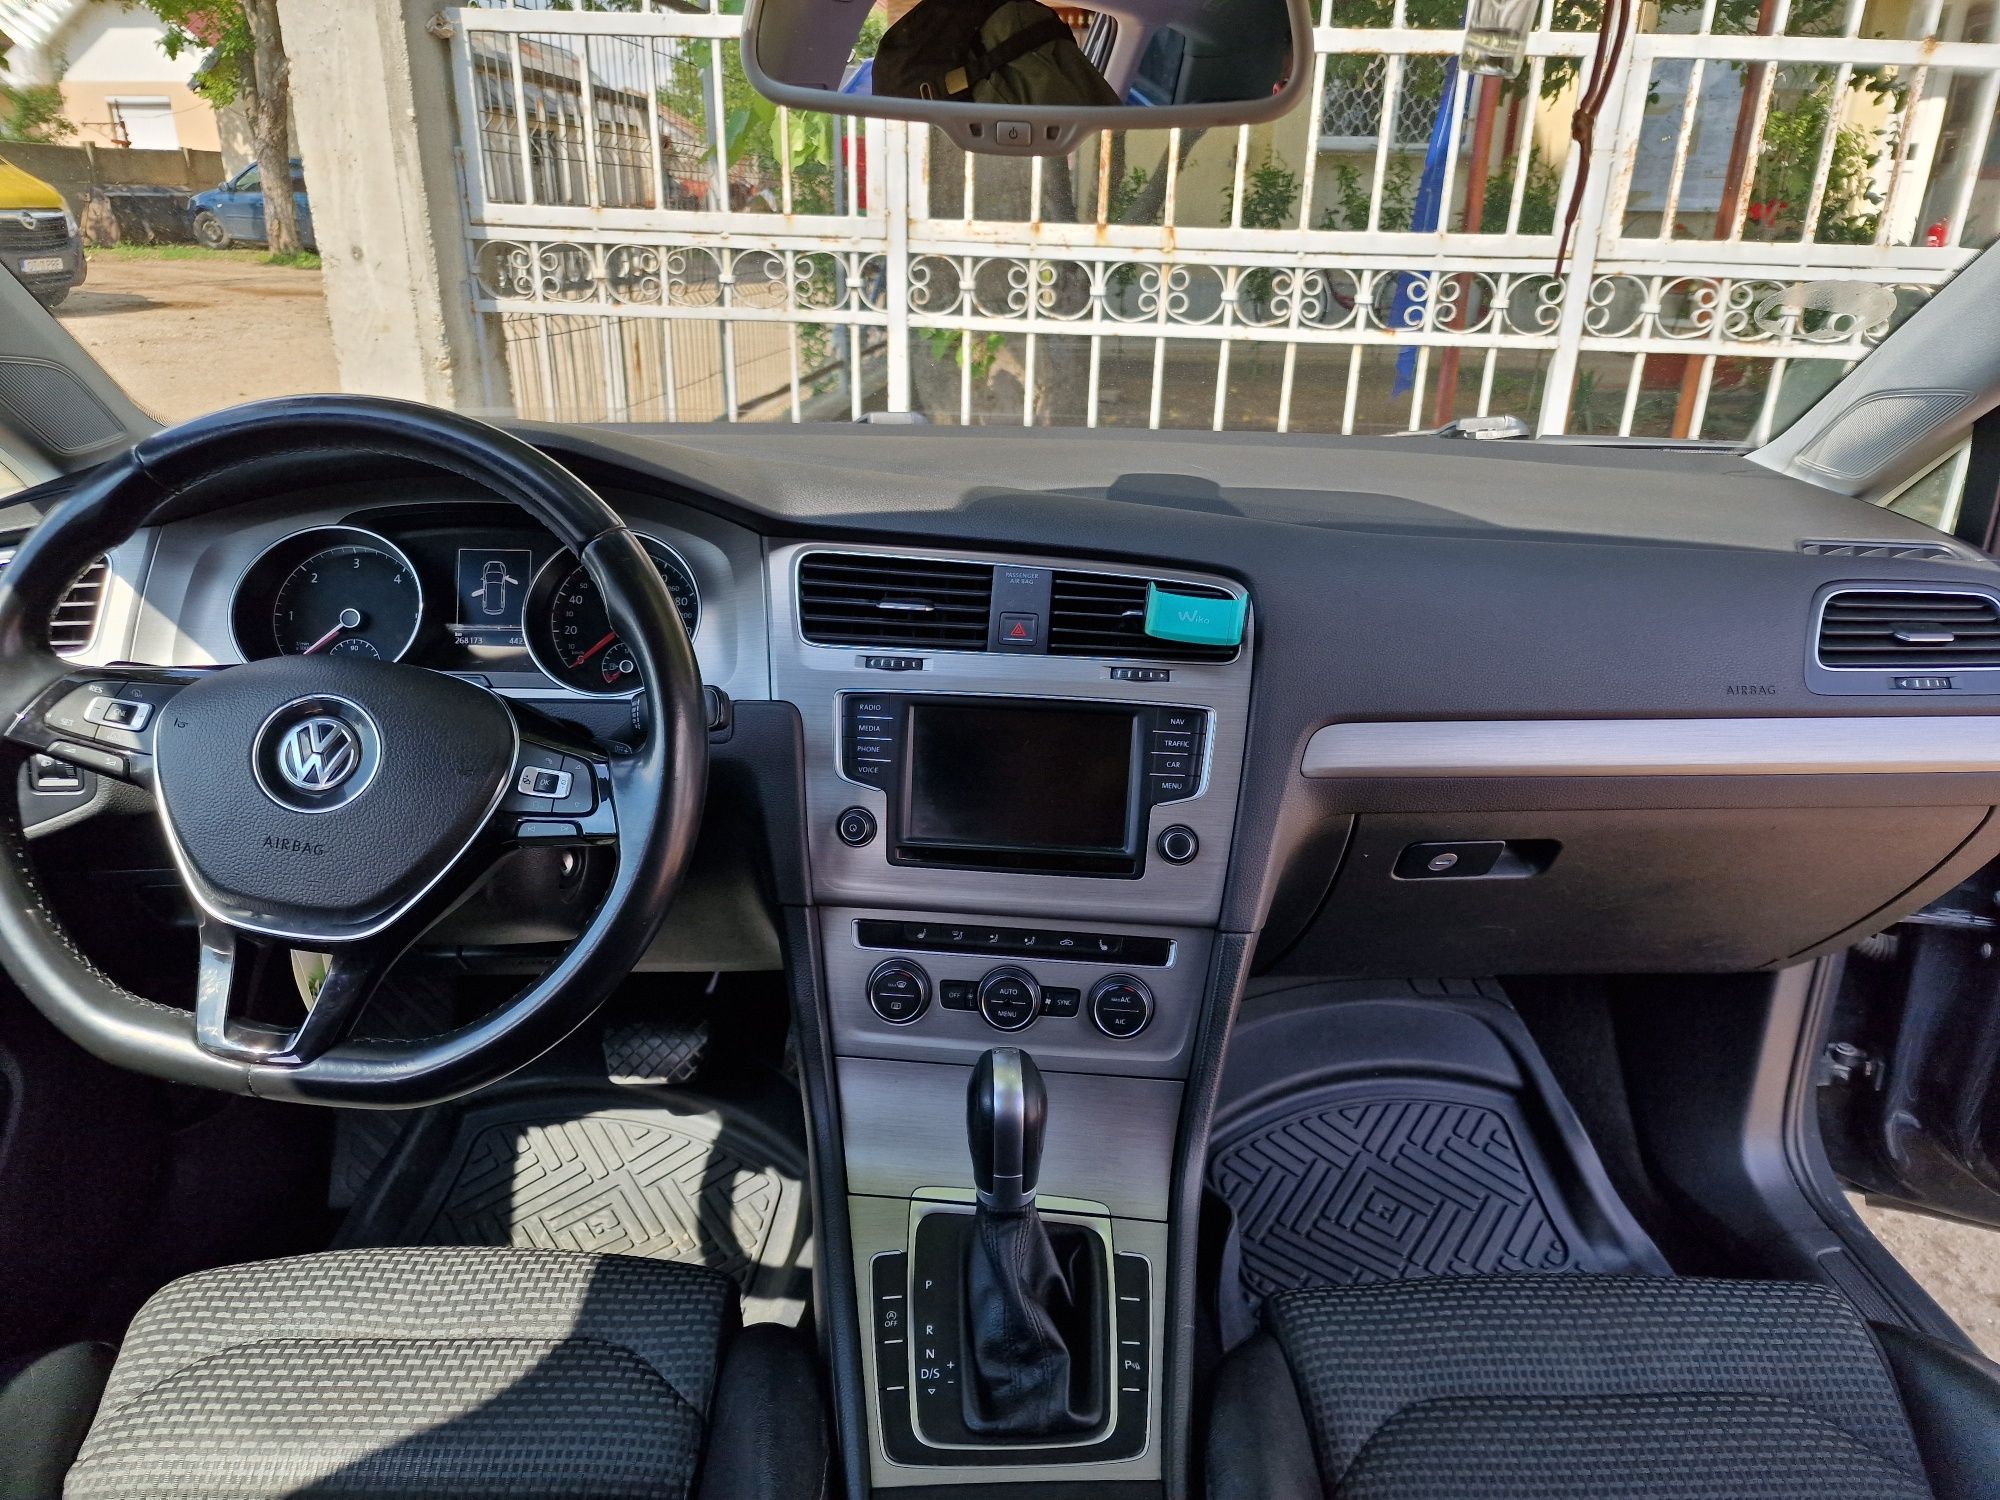 VW Golf 7 2.0 TDI